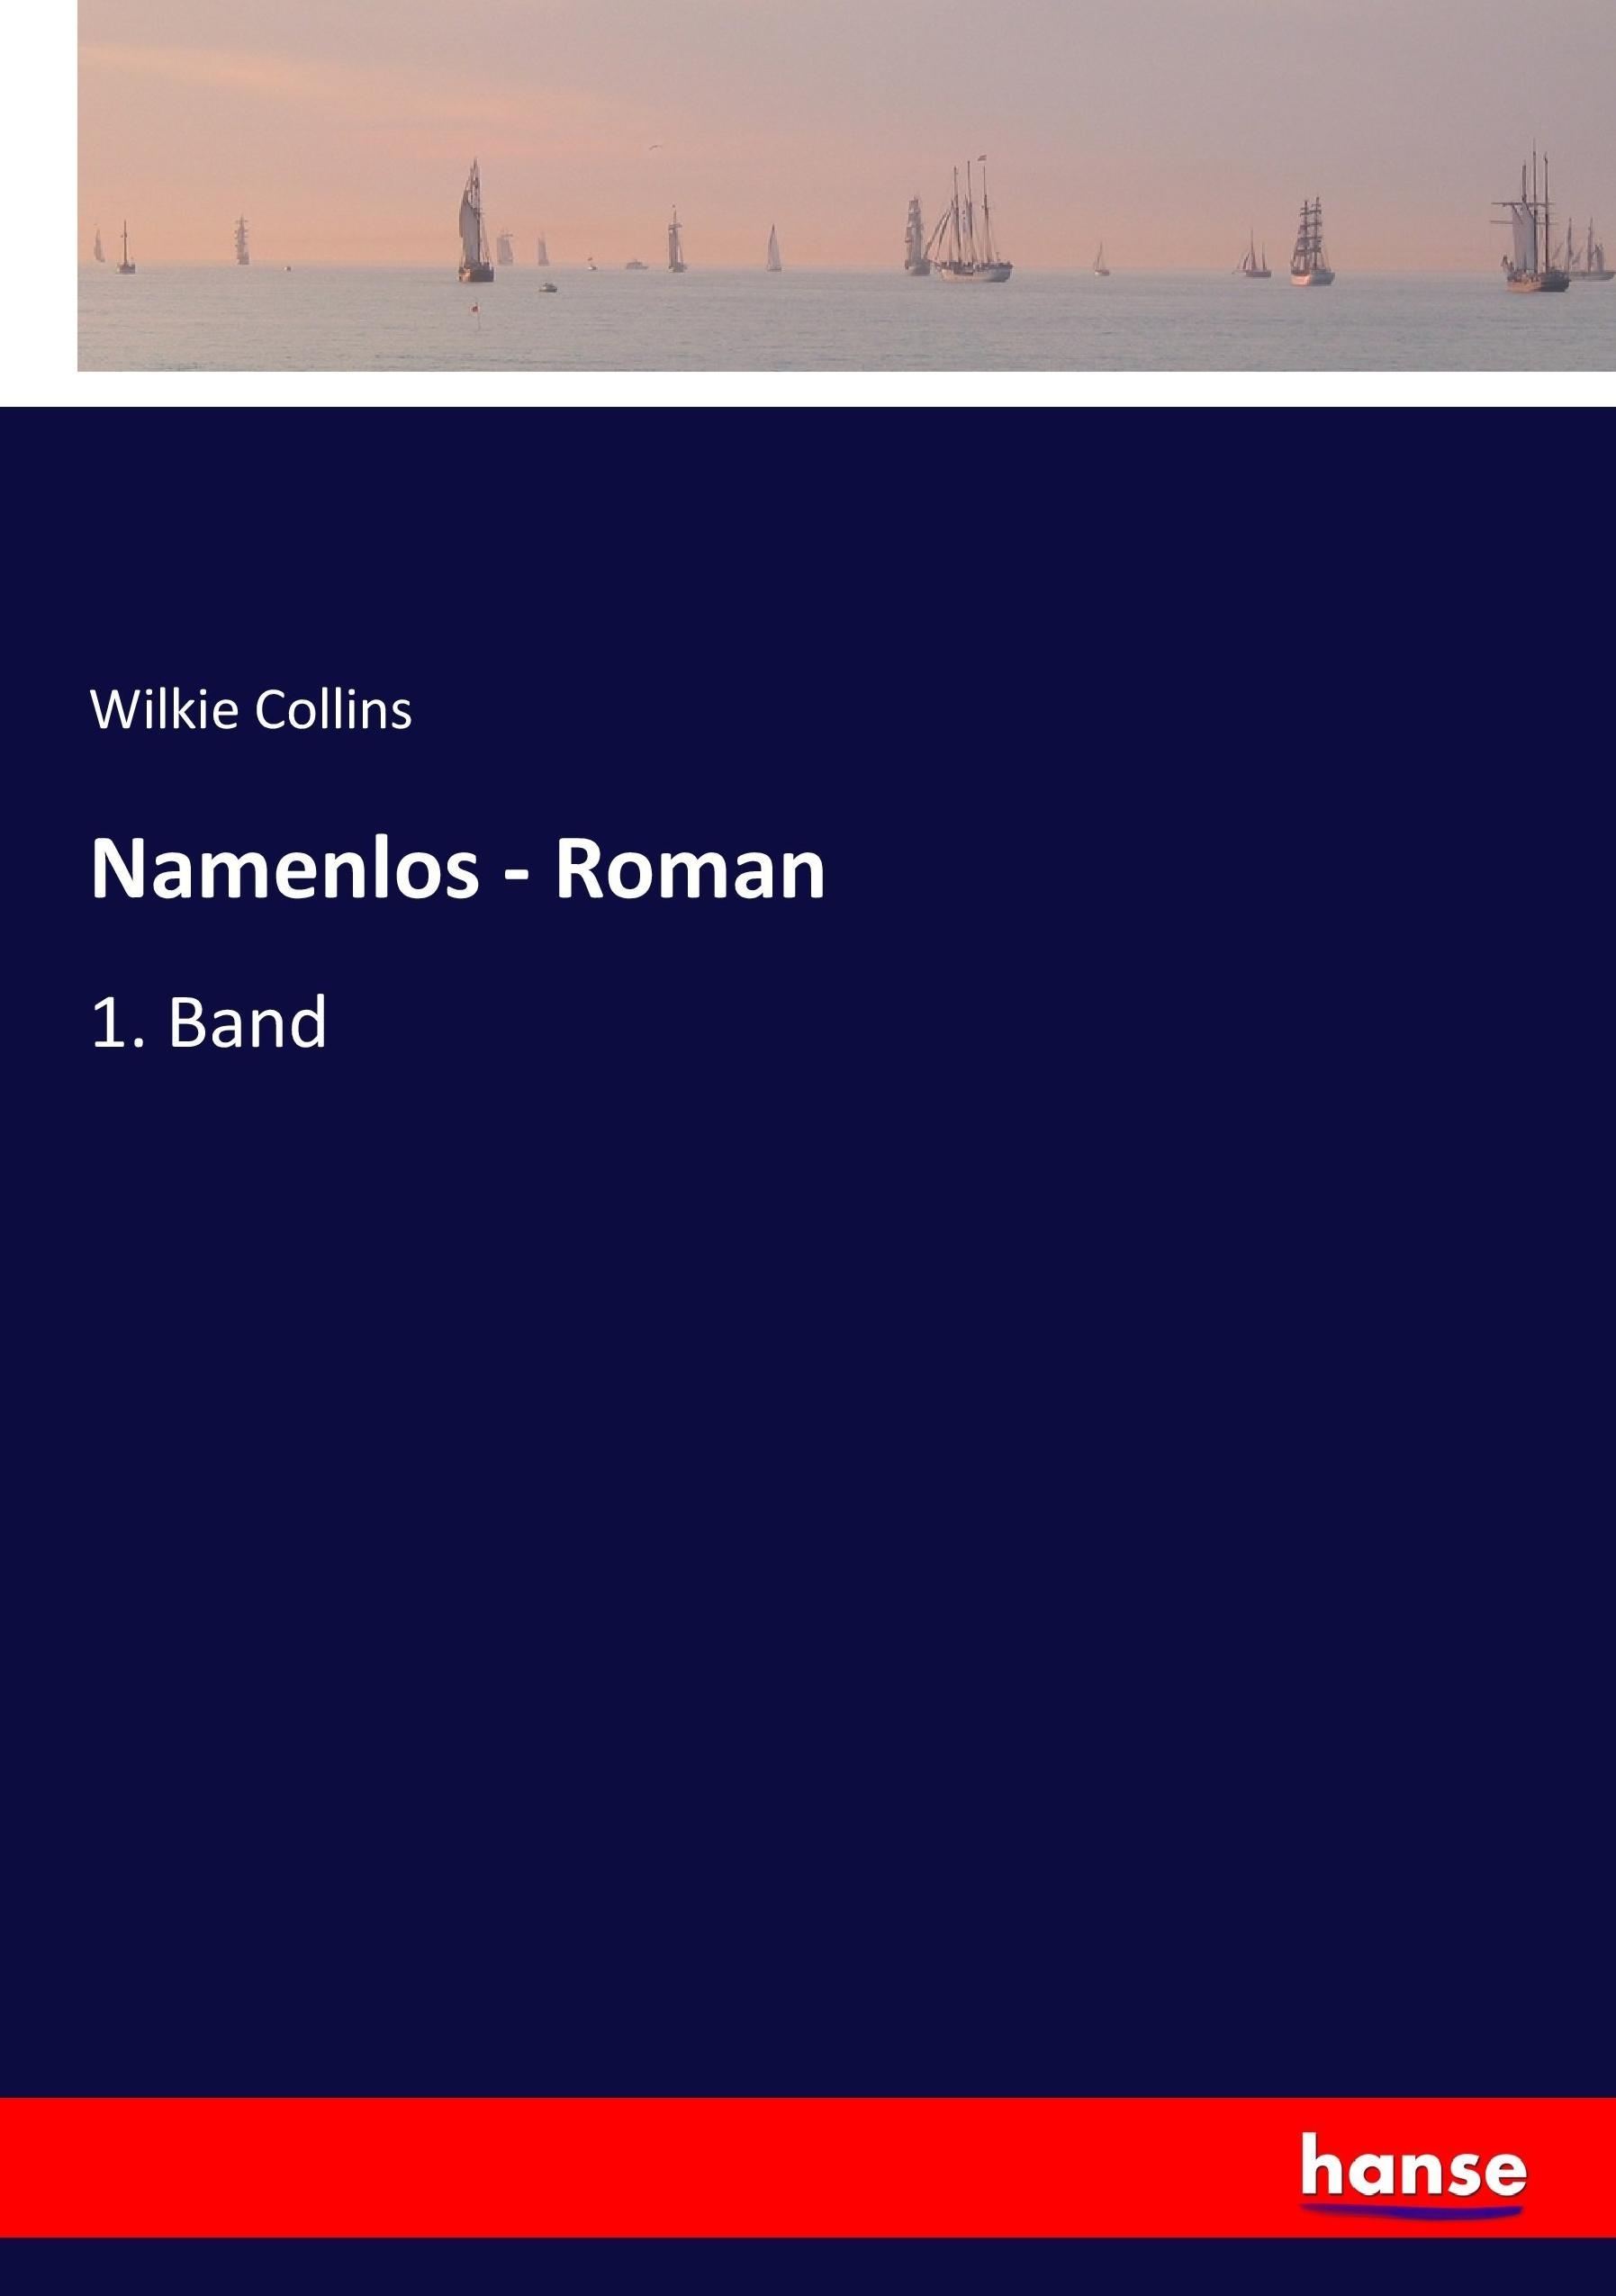 Namenlos - Roman | 1. Band | Wilkie Collins | Taschenbuch | Paperback | 260 S. | Deutsch | 2017 | hansebooks | EAN 9783744645270 - Collins, Wilkie